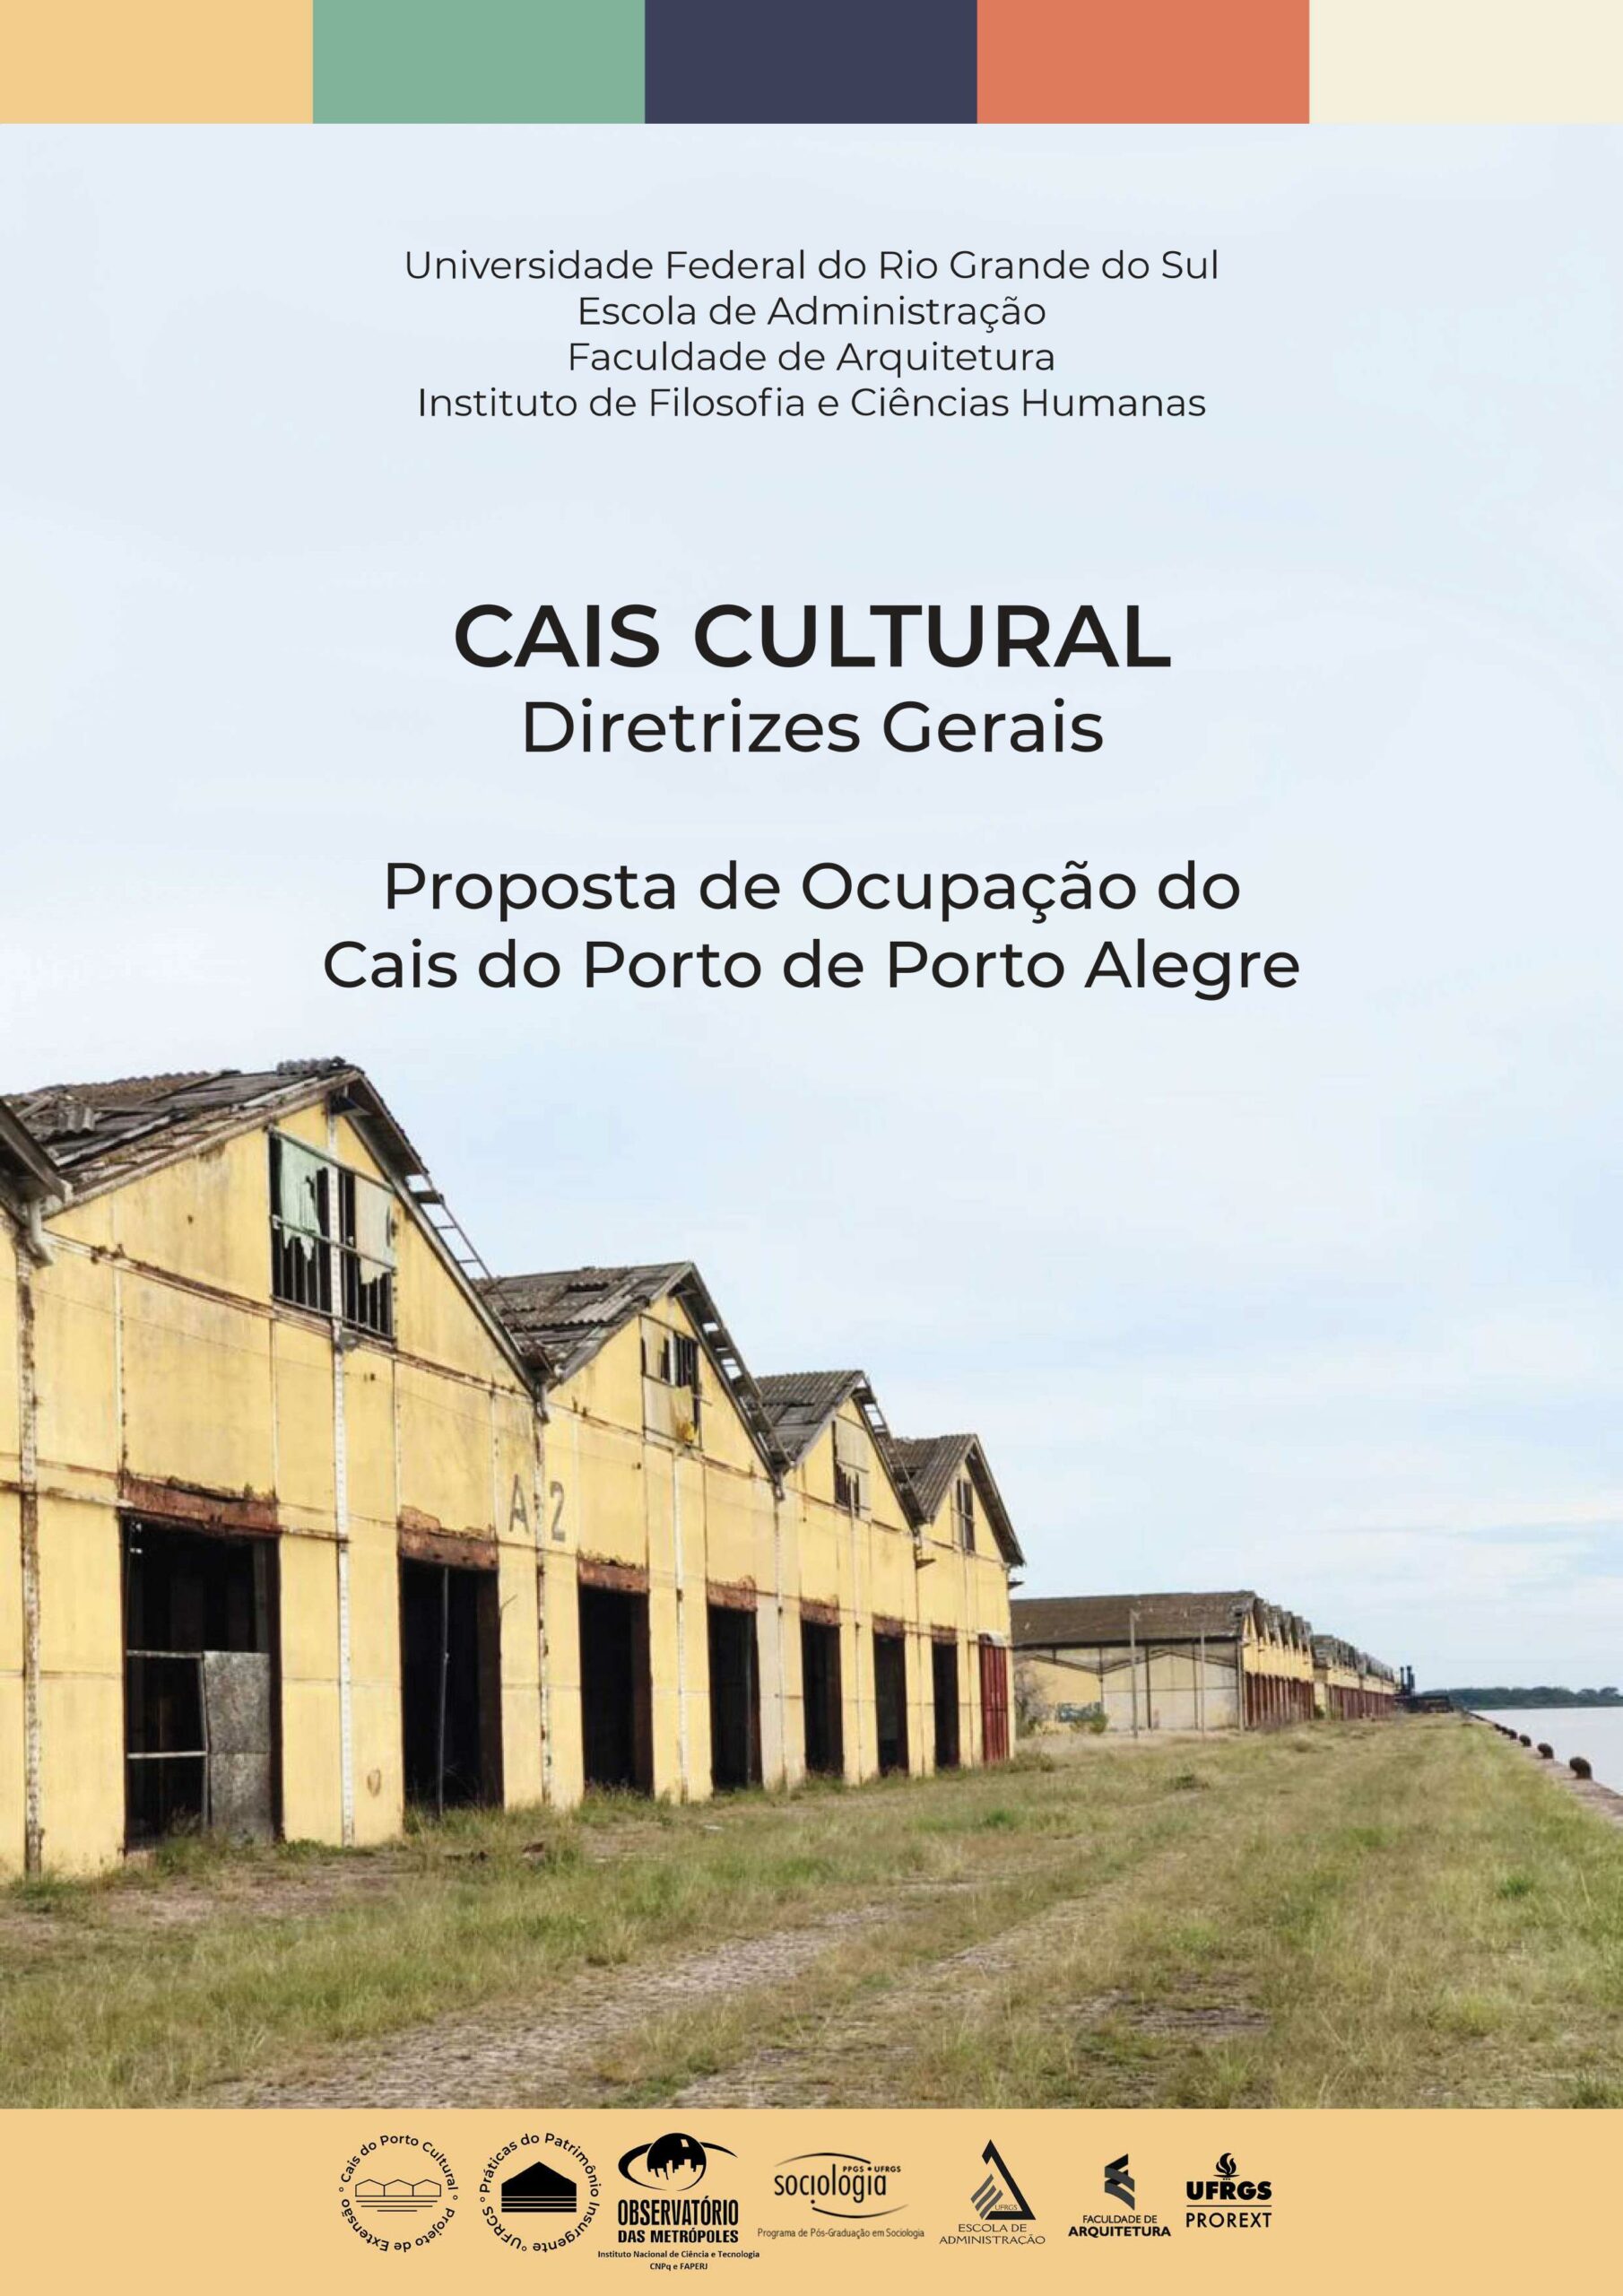 Cais Cultural | Diretrizes Gerais. Proposta de Ocupação do Cais do Porto de Porto Alegre